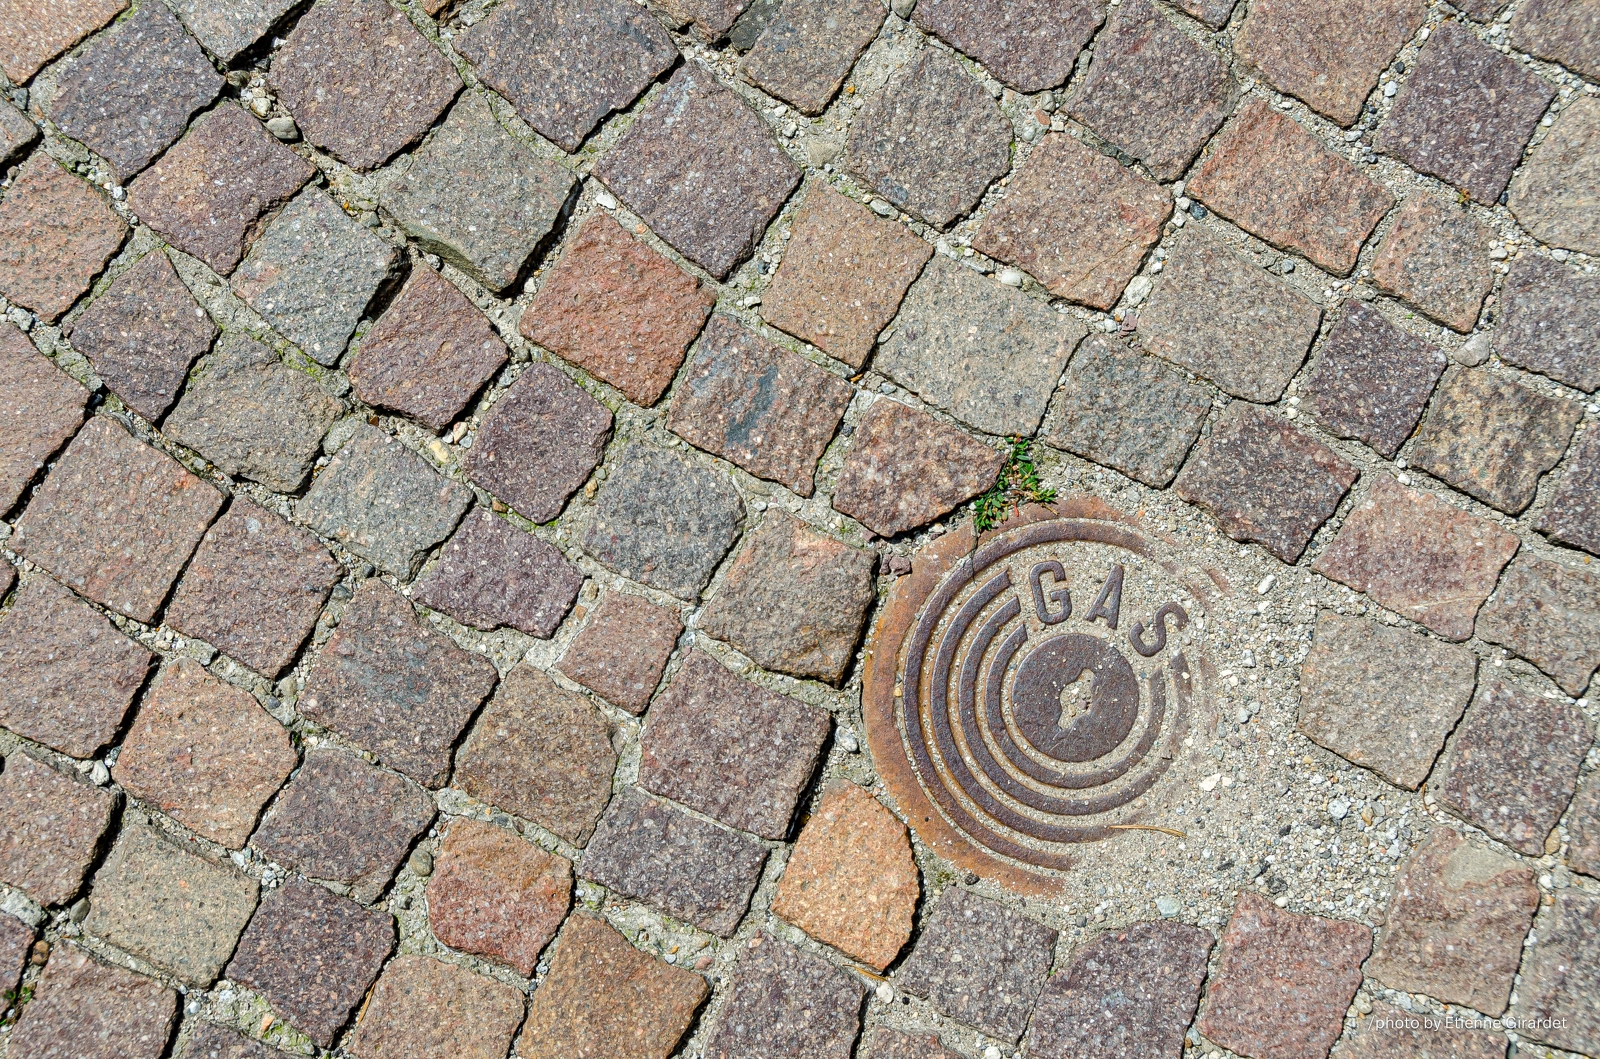 201107_25_DSC_4904-manhole-cover--by-E-Girardet.jpg